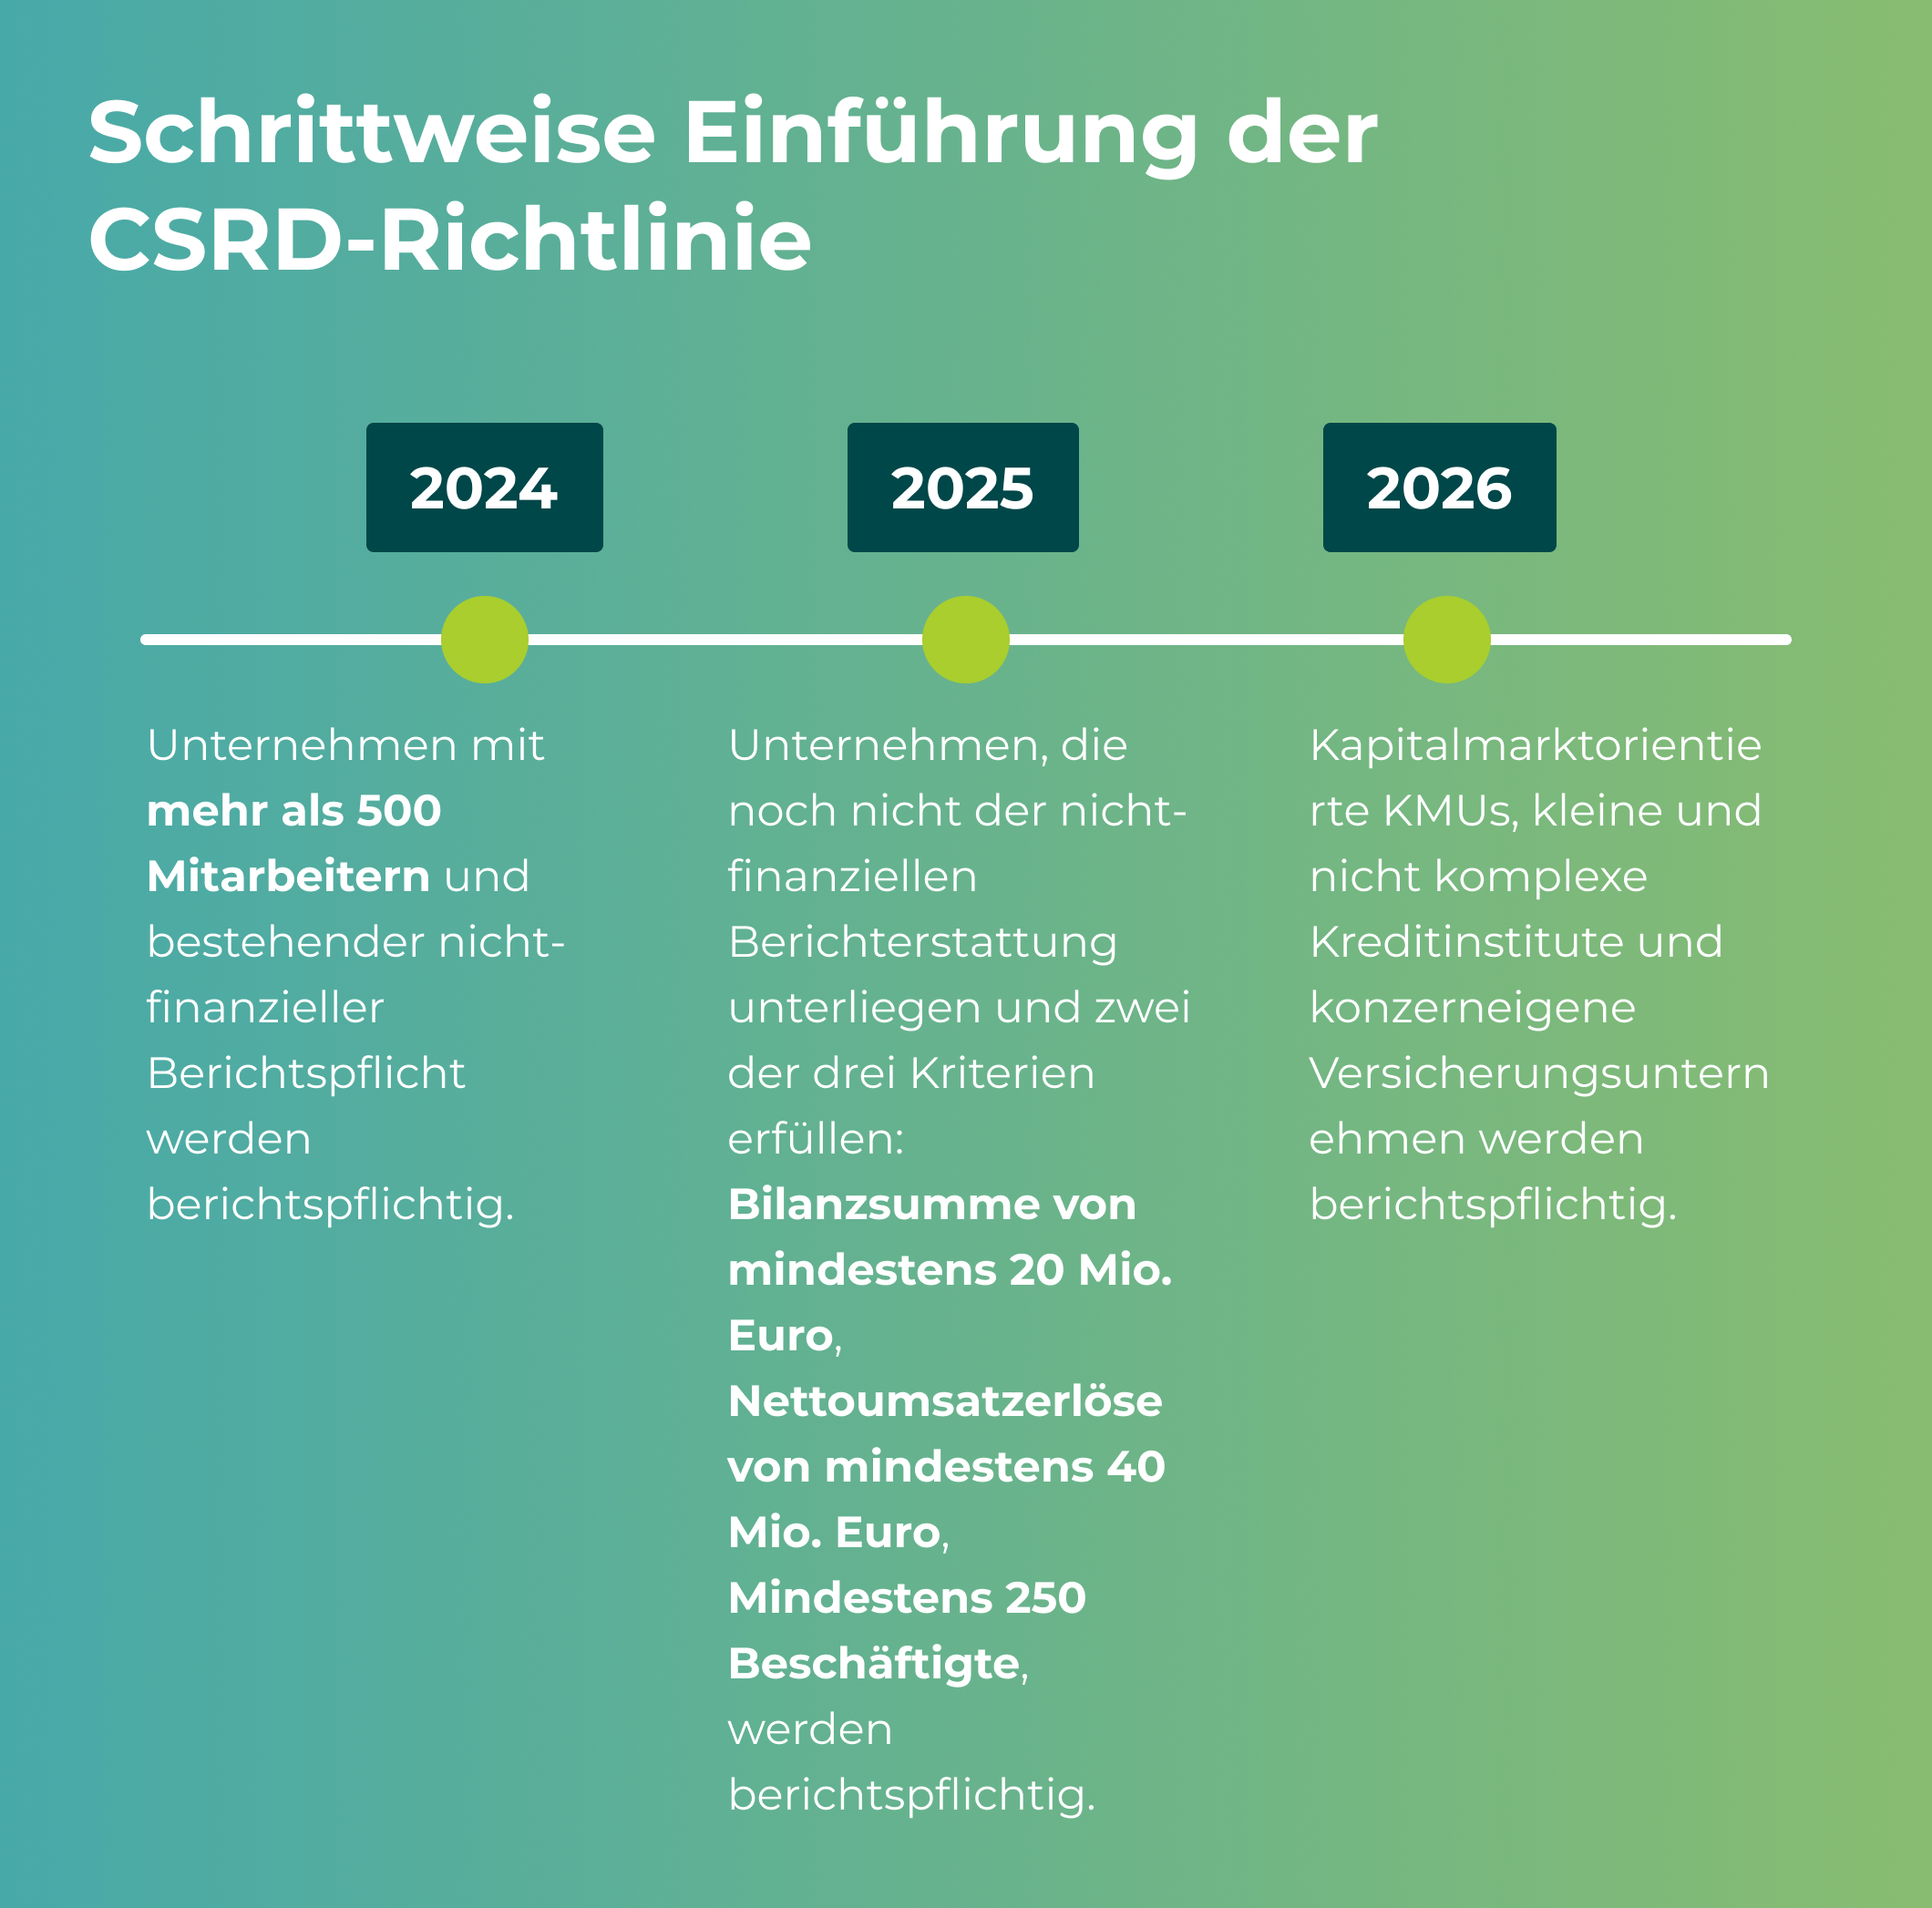 Grafik zeigt die schrittweise Einführung der CSRD-Richtlinie von 2024 bis 2026, einschließlich der spezifischen Berichtspflichten für Unternehmen in diesen Jahren.